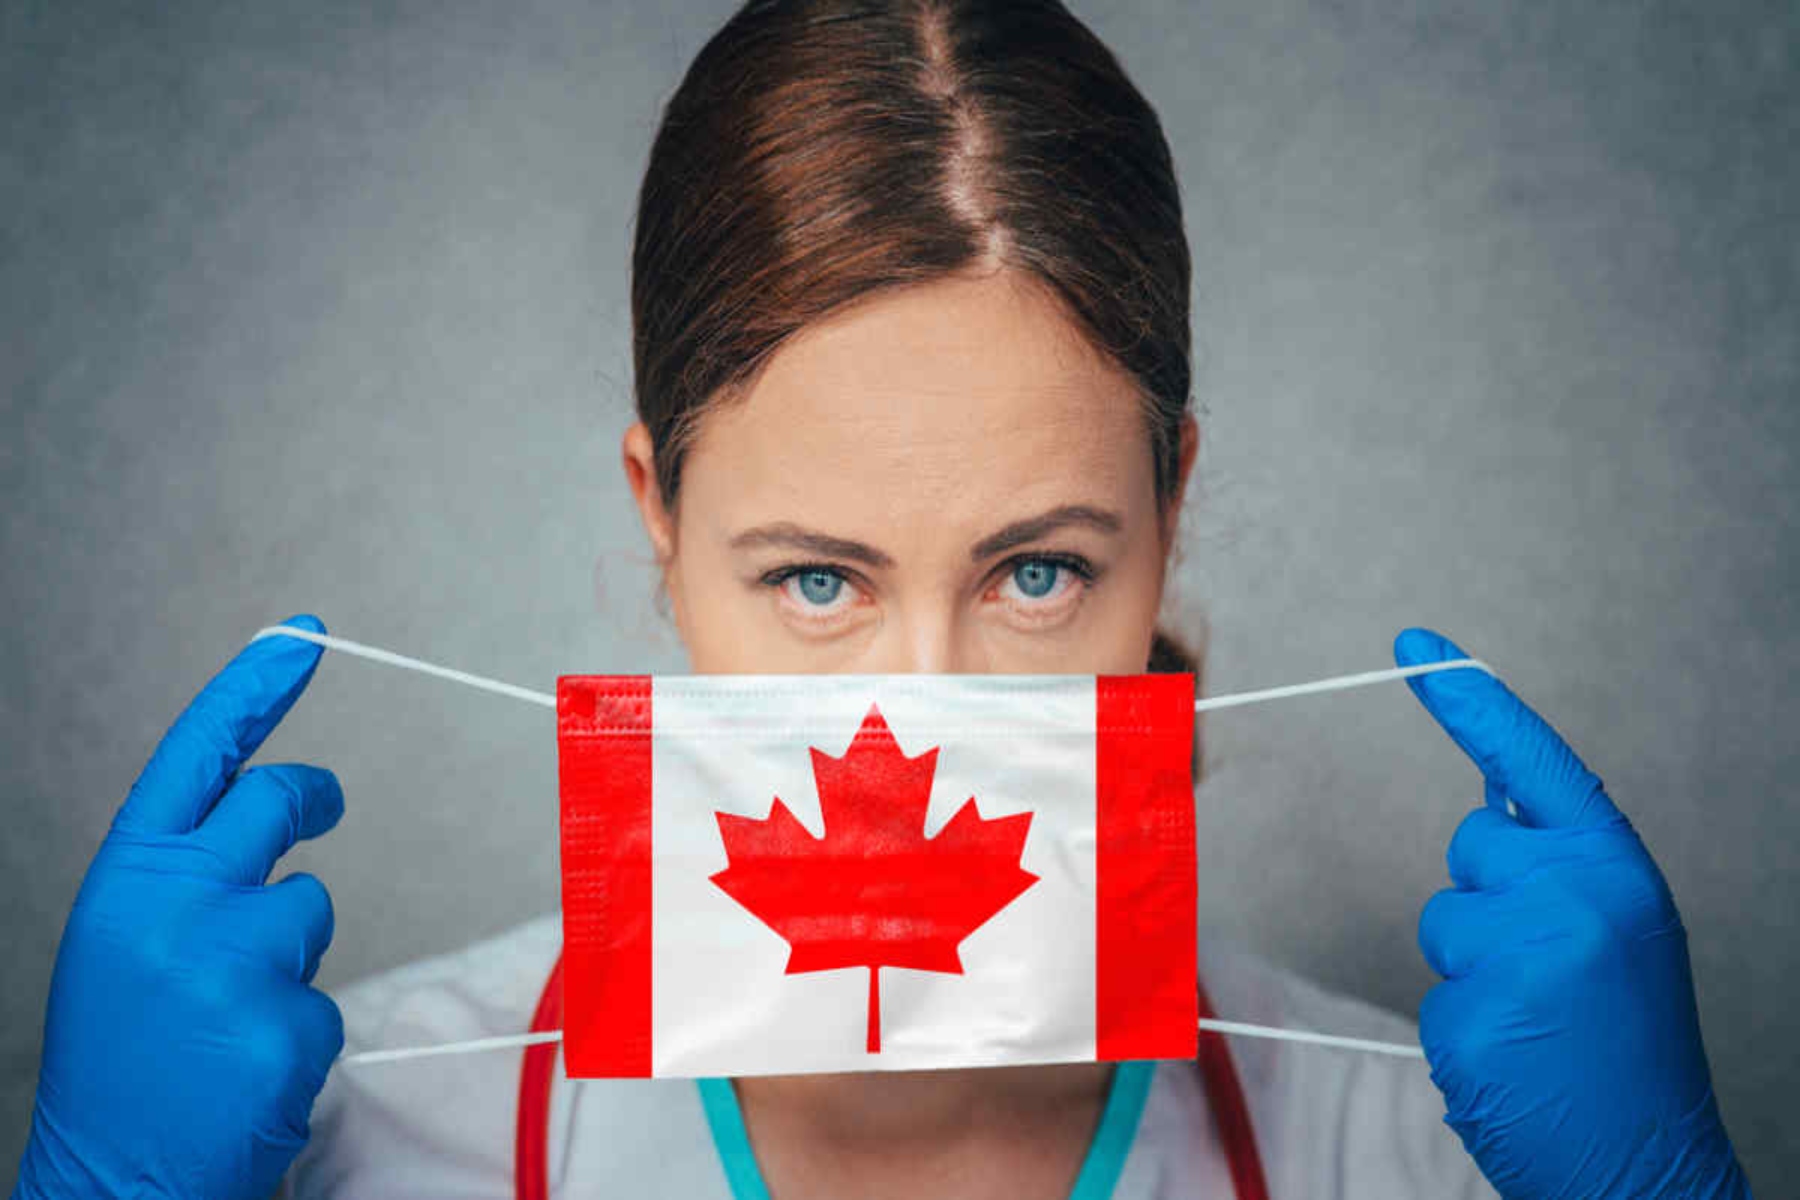 Καναδάς χειρουργεία: 2 χρόνια θα χρειαστούν για τις χειρουργικές επεμβάσεις που εκκρεμούν λόγω κορωνοϊού